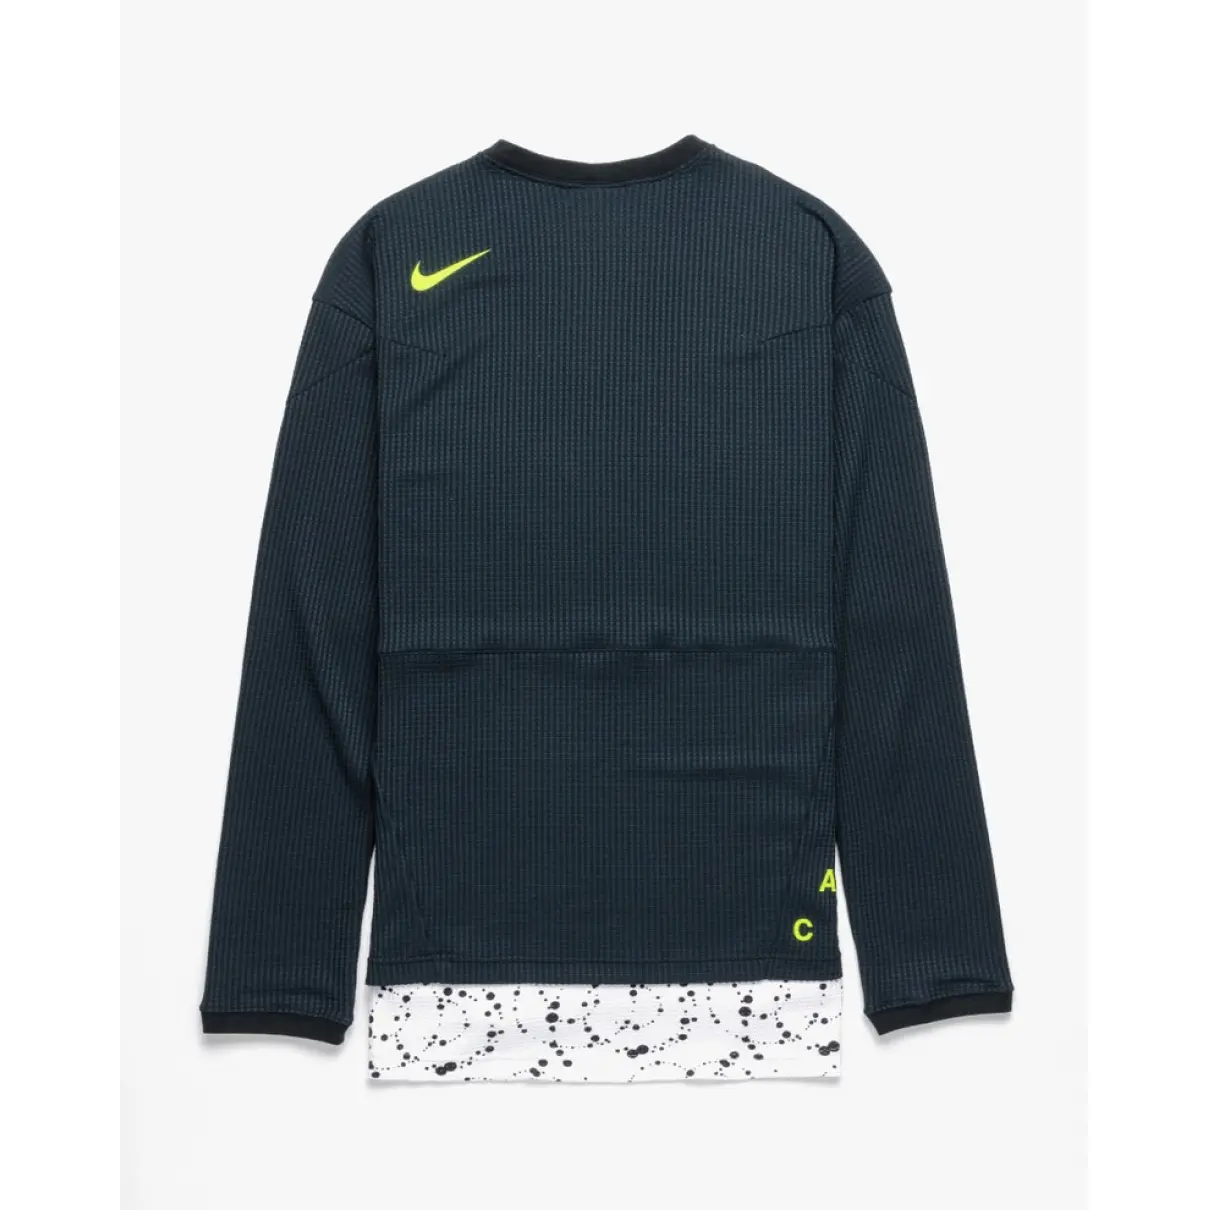 Luxury Nike Acg Knitwear & Sweatshirts Men